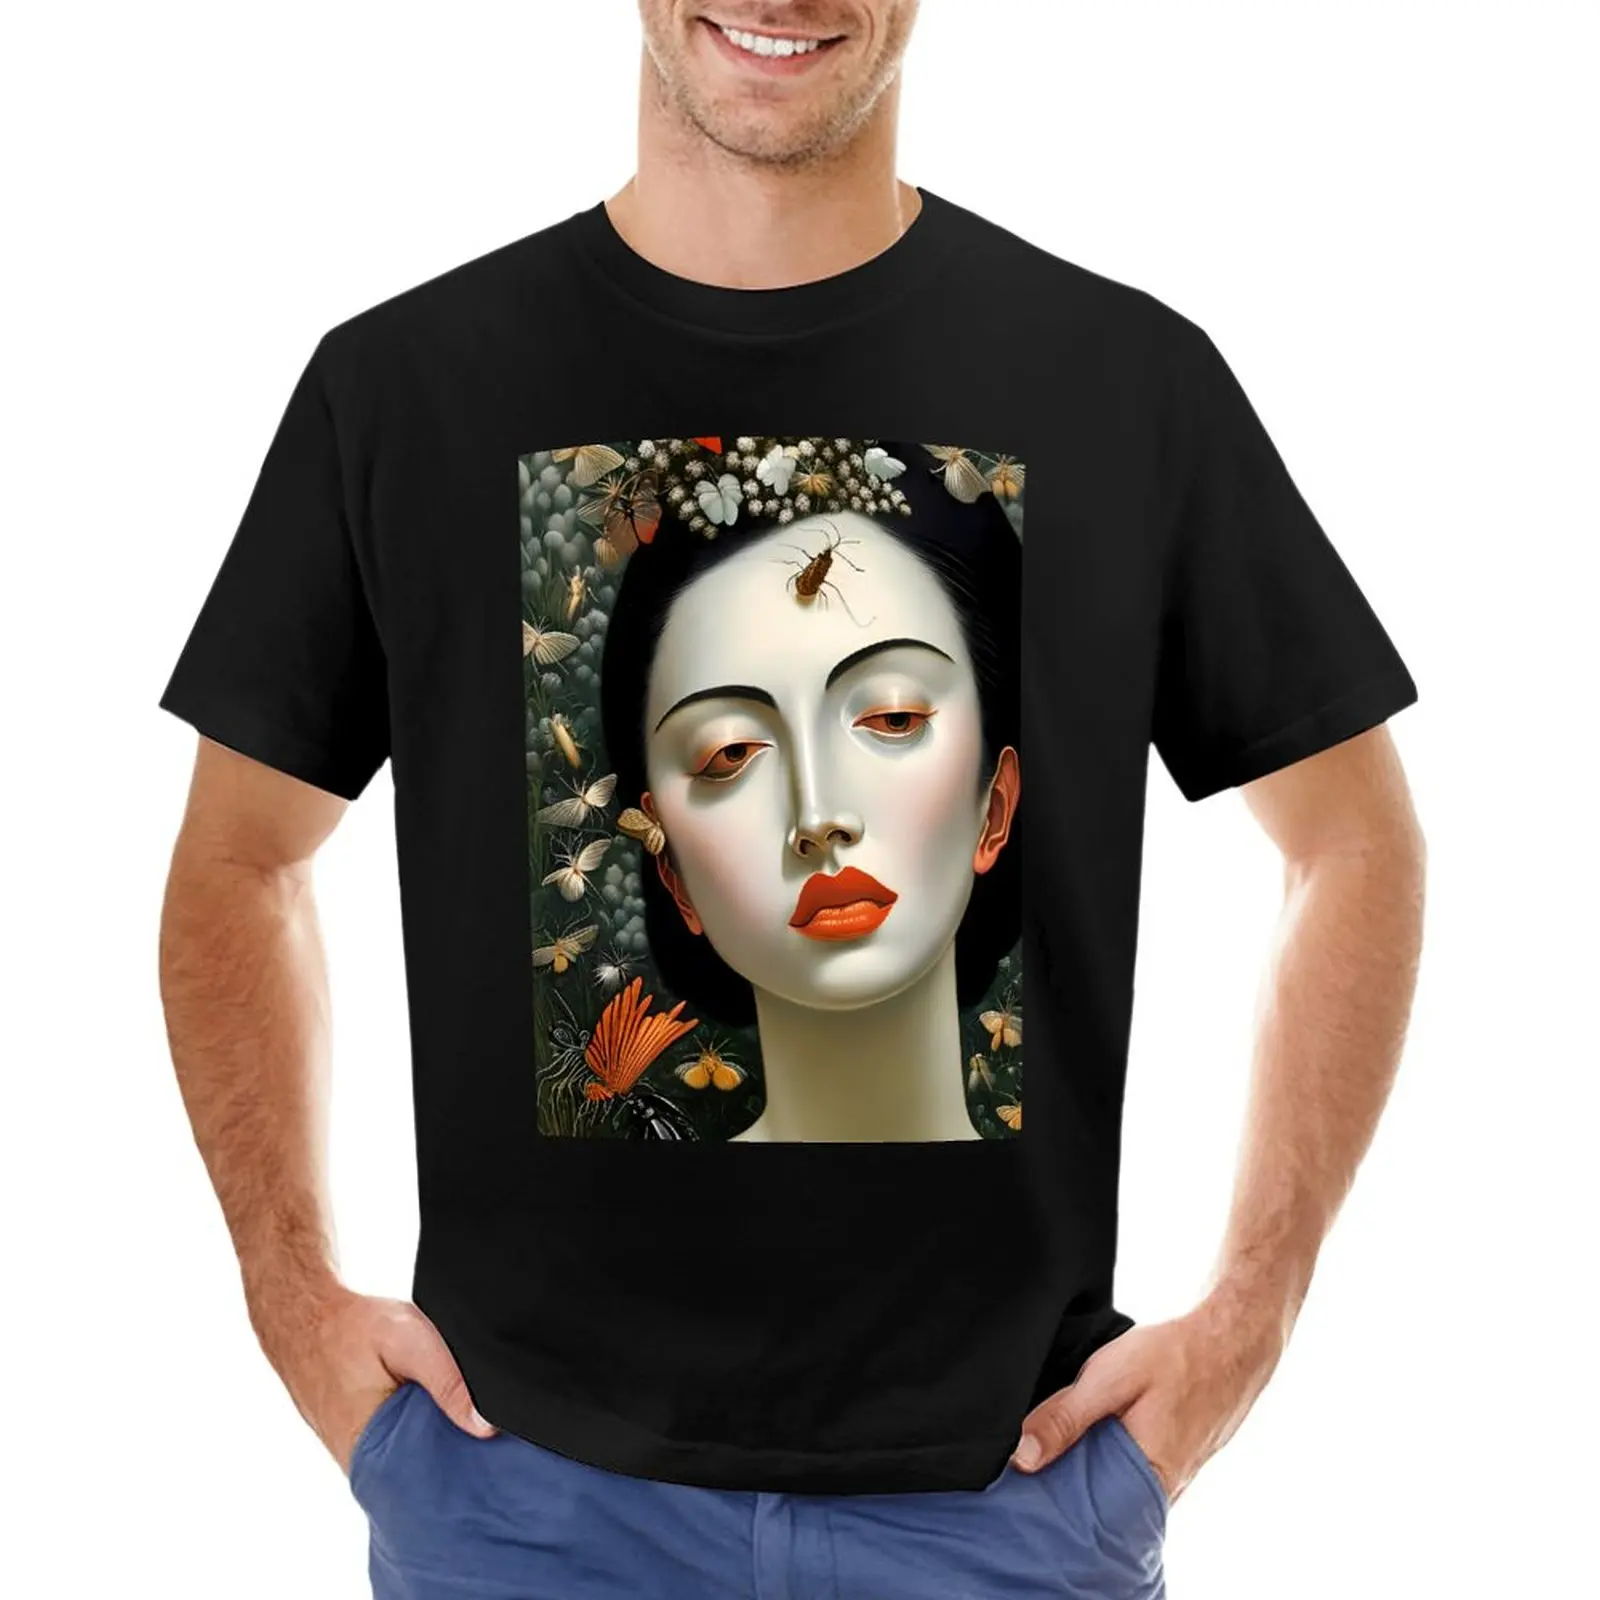 Bugs e a Beleza - Uma Pintura Surrealista de uma Mulher com Pele de Porcelana e Intrincados Insetos T-Shirt